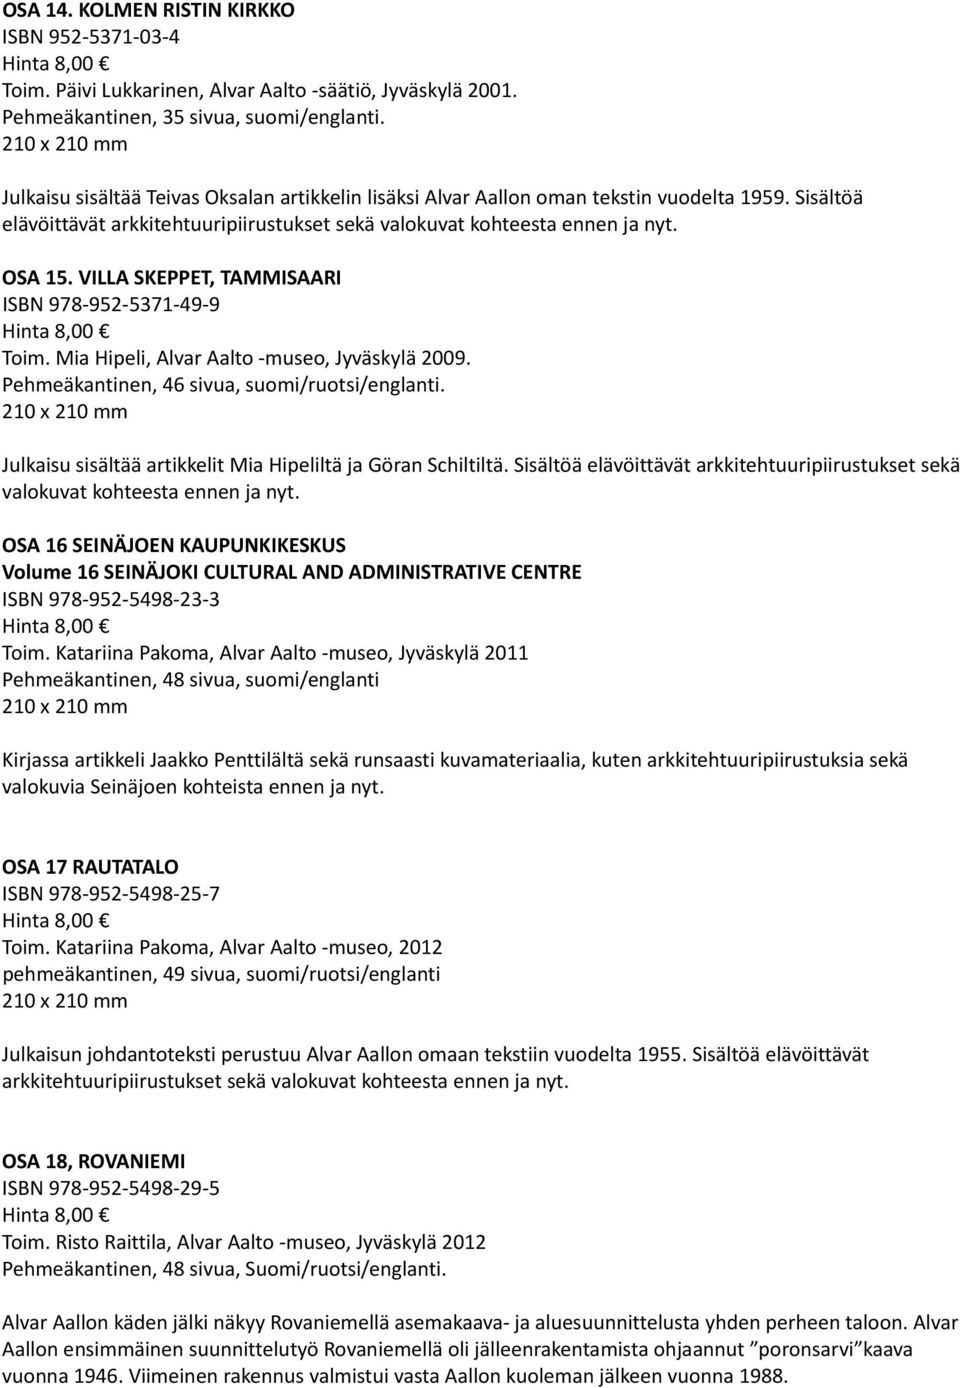 VILLA SKEPPET, TAMMISAARI ISBN 978 952 5371 49 9 Toim. Mia Hipeli, Alvar Aalto museo, Jyväskylä 2009. Pehmeäkantinen, 46 sivua, suomi/ruotsi/englanti.